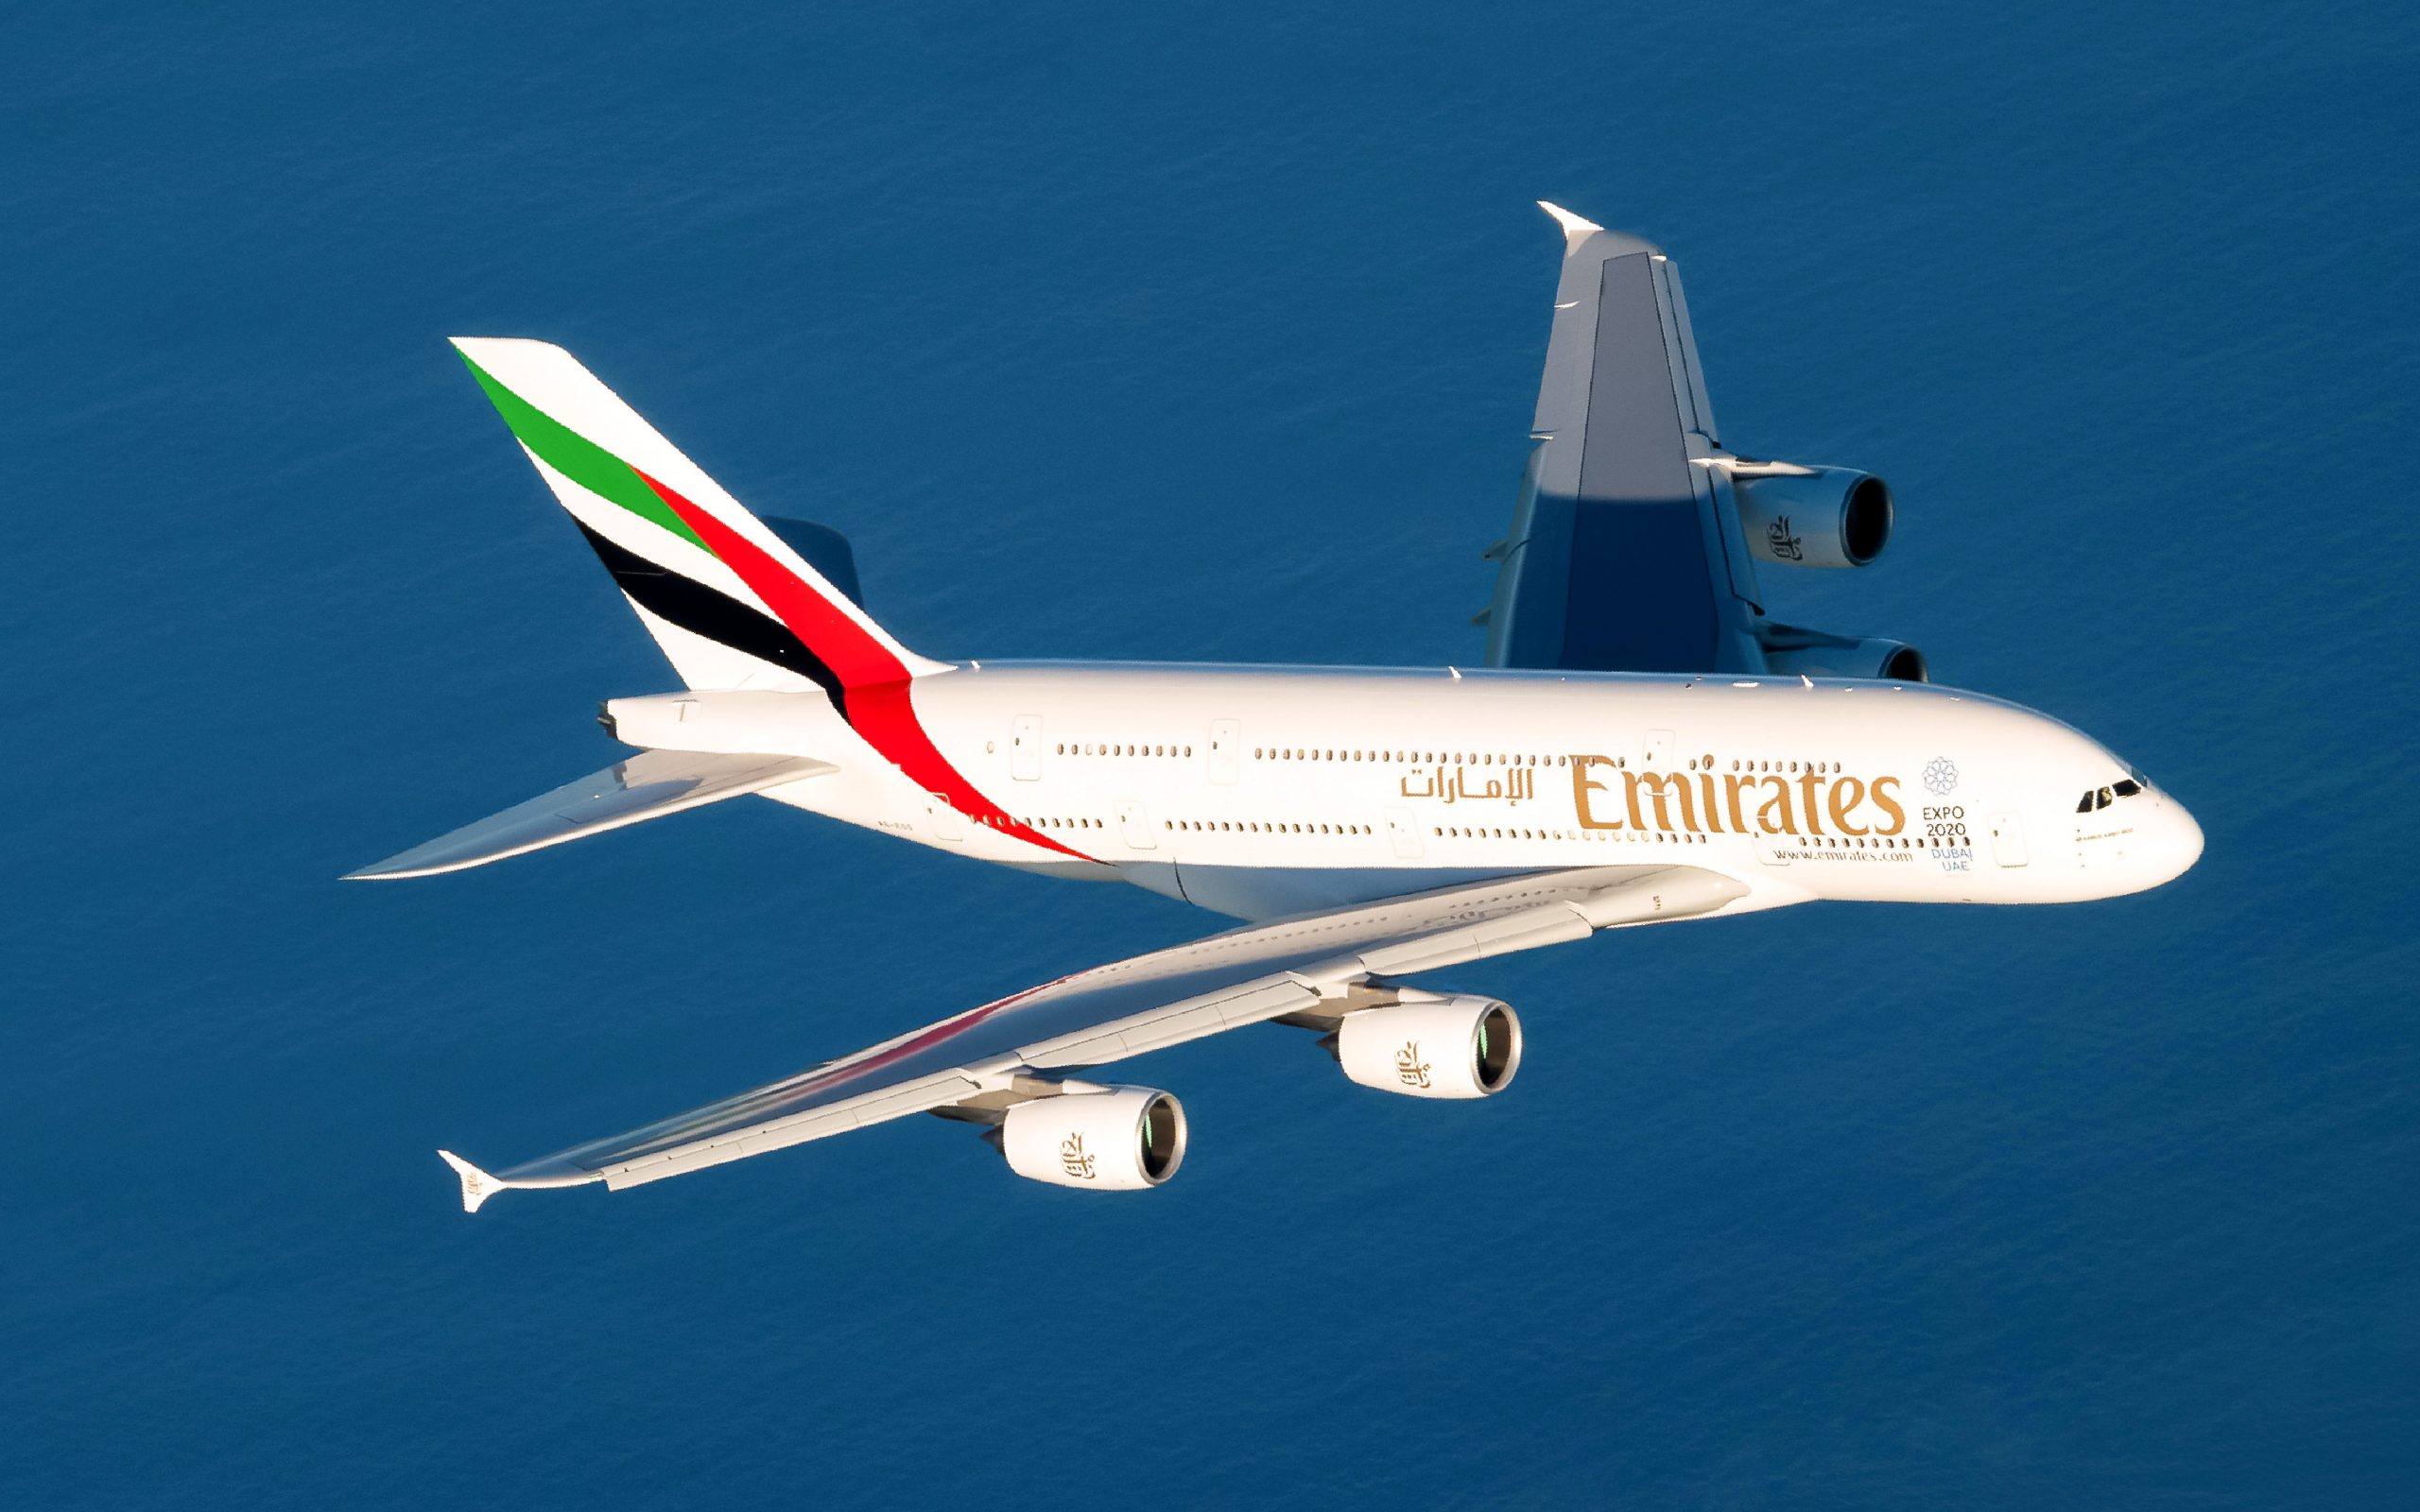 All’aeroporto Marconi riprendono i voli per Dubai